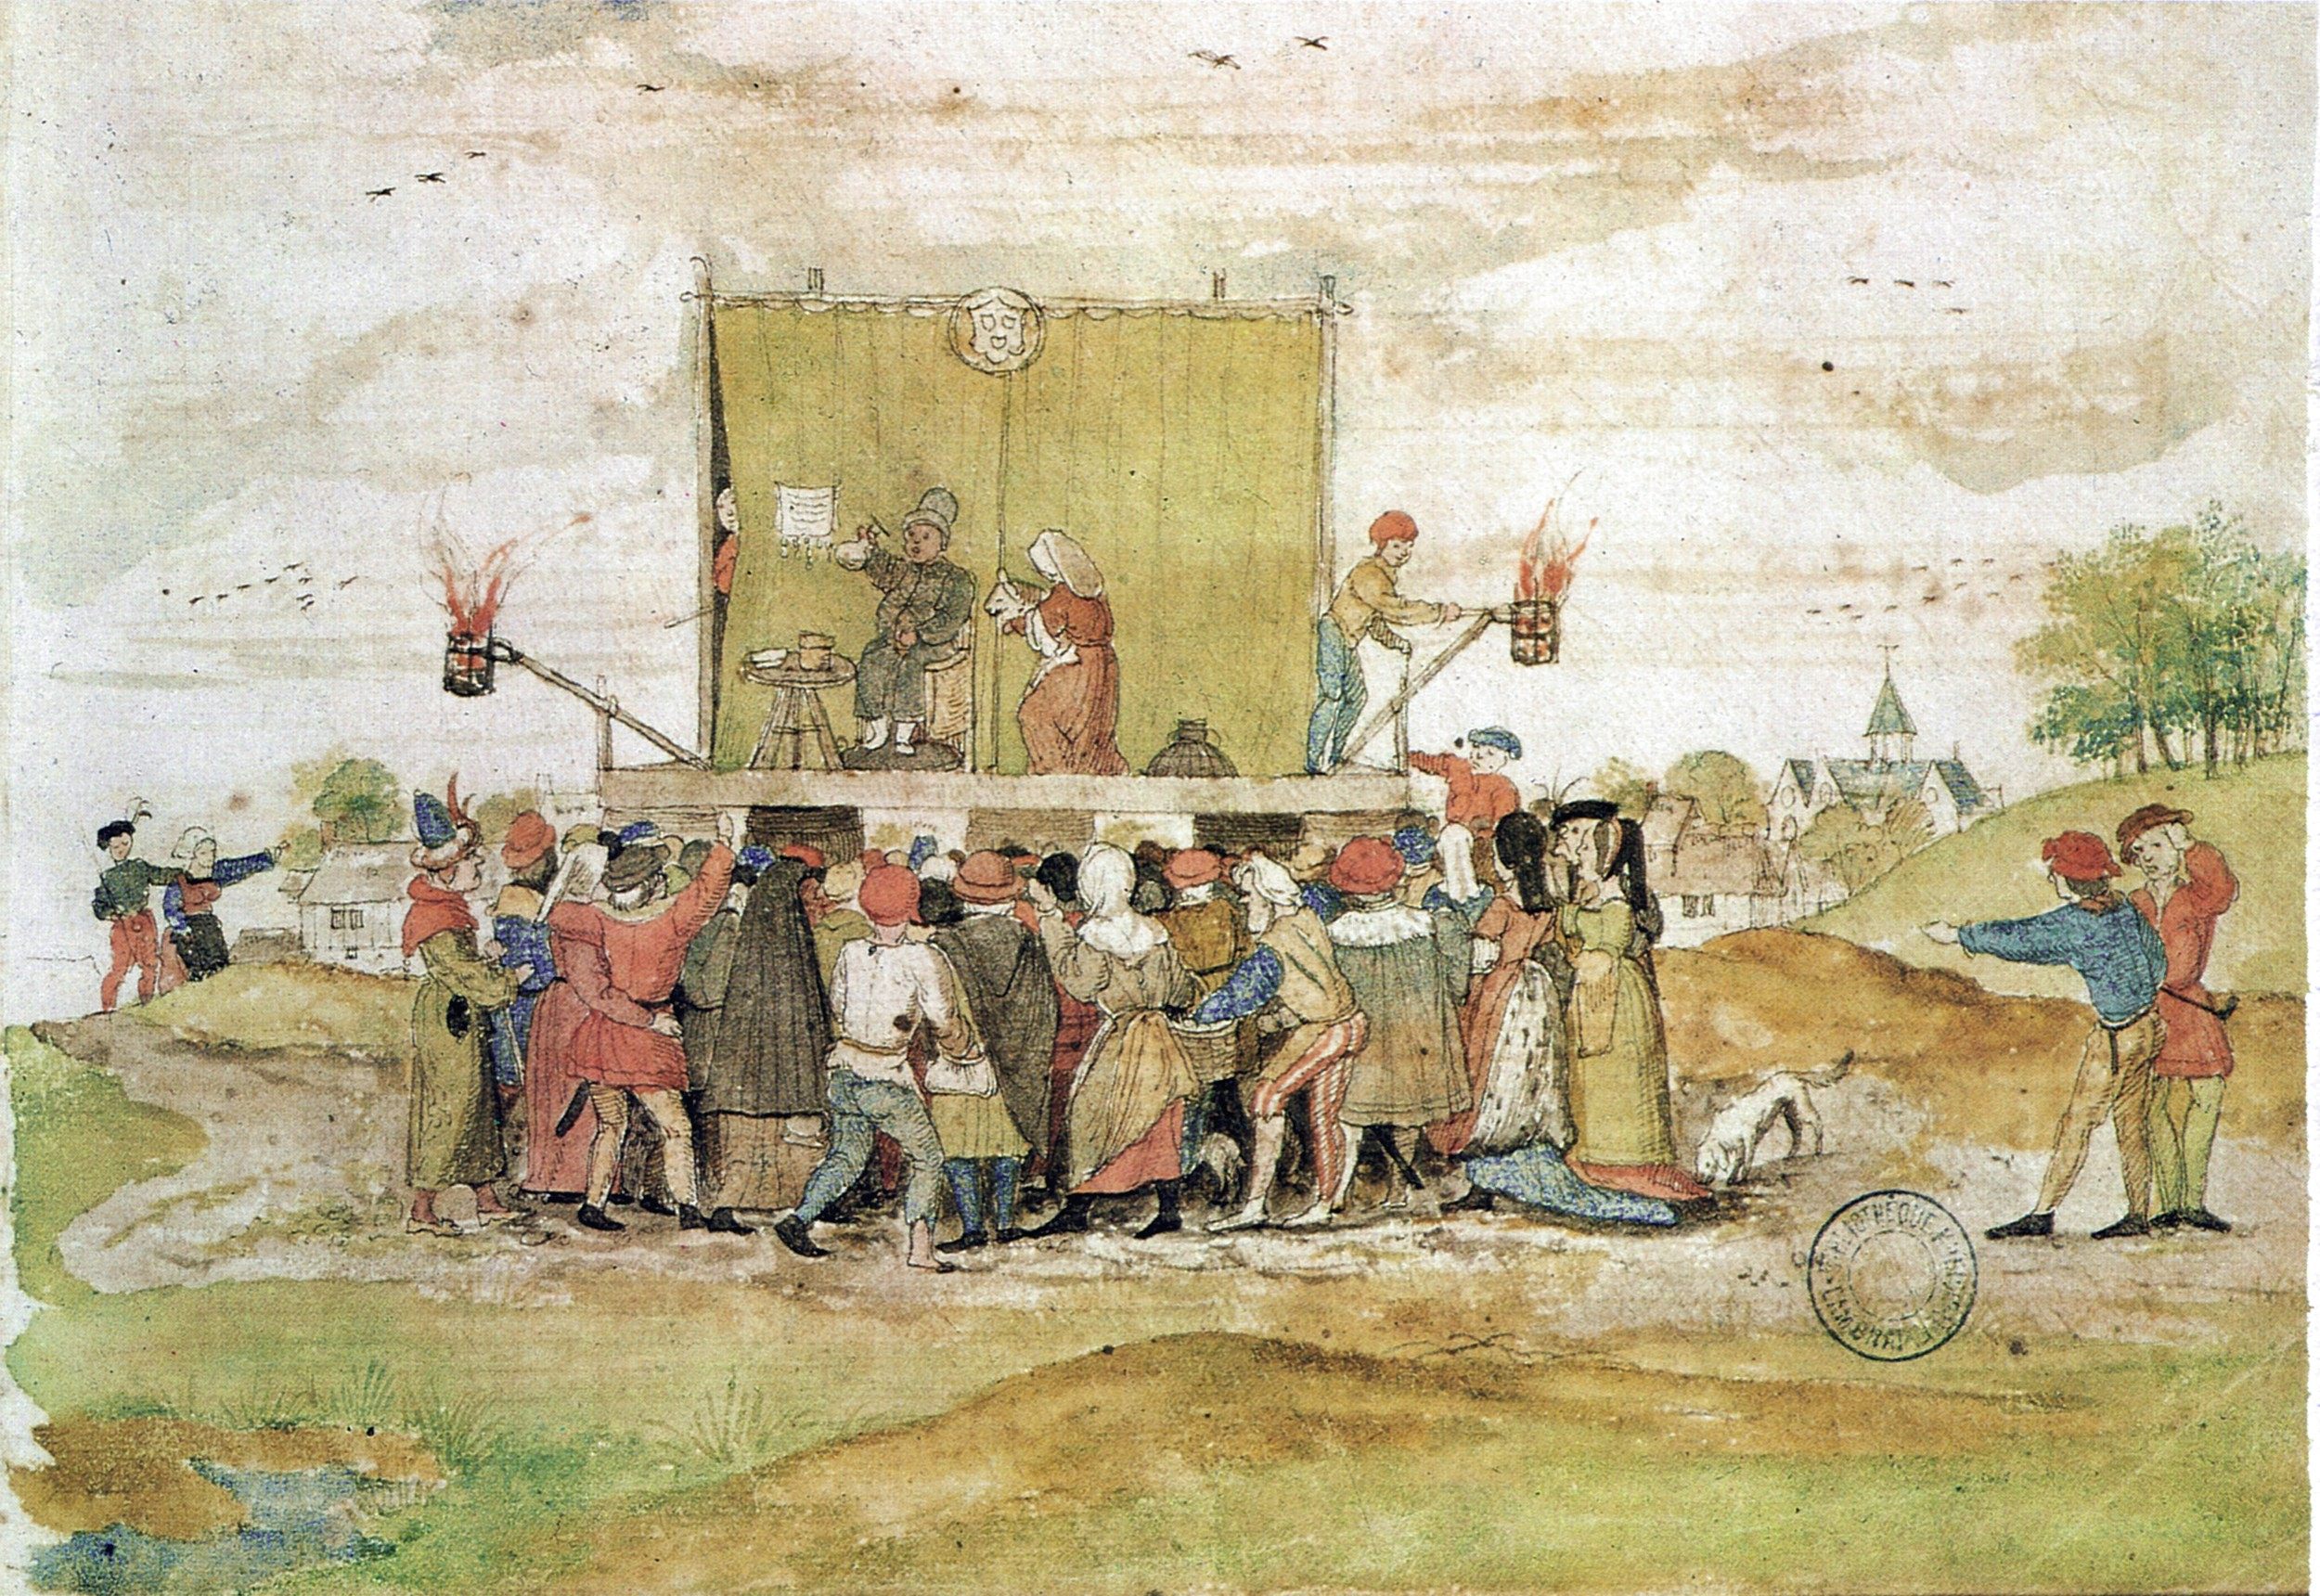 medieval peasant life